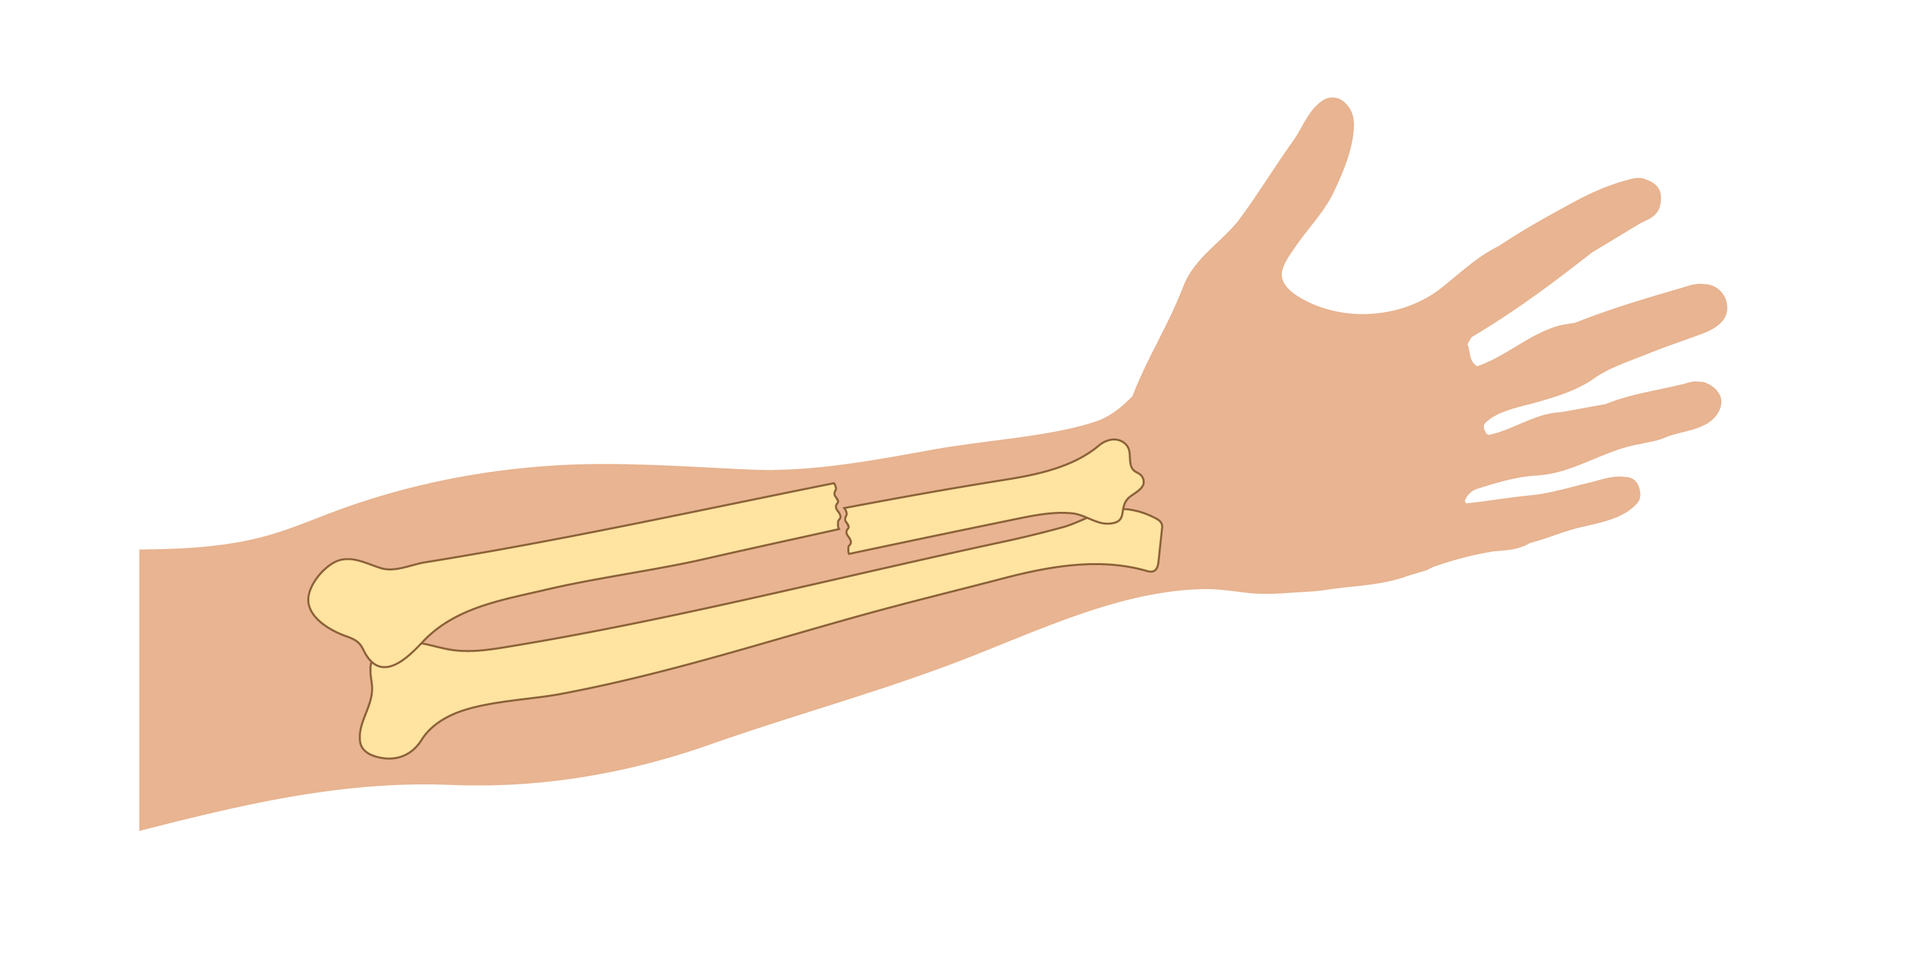 Ilustracja przedstawia zarys przedramienia prawej ręki skierowany wyprostowanymi palcami w prawą stronę. Na ilustrację naniesiono schematyczne rysunki kości przedramienia ułożone równolegle do siebie. Przykład przedstawia złamanie przebiegające w poprzek górnej kości. W miejscu złamania kość jest przemieszczona, przez co końce kości w tym miejscu nie znajdują się dokładnie naprzeciw siebie.